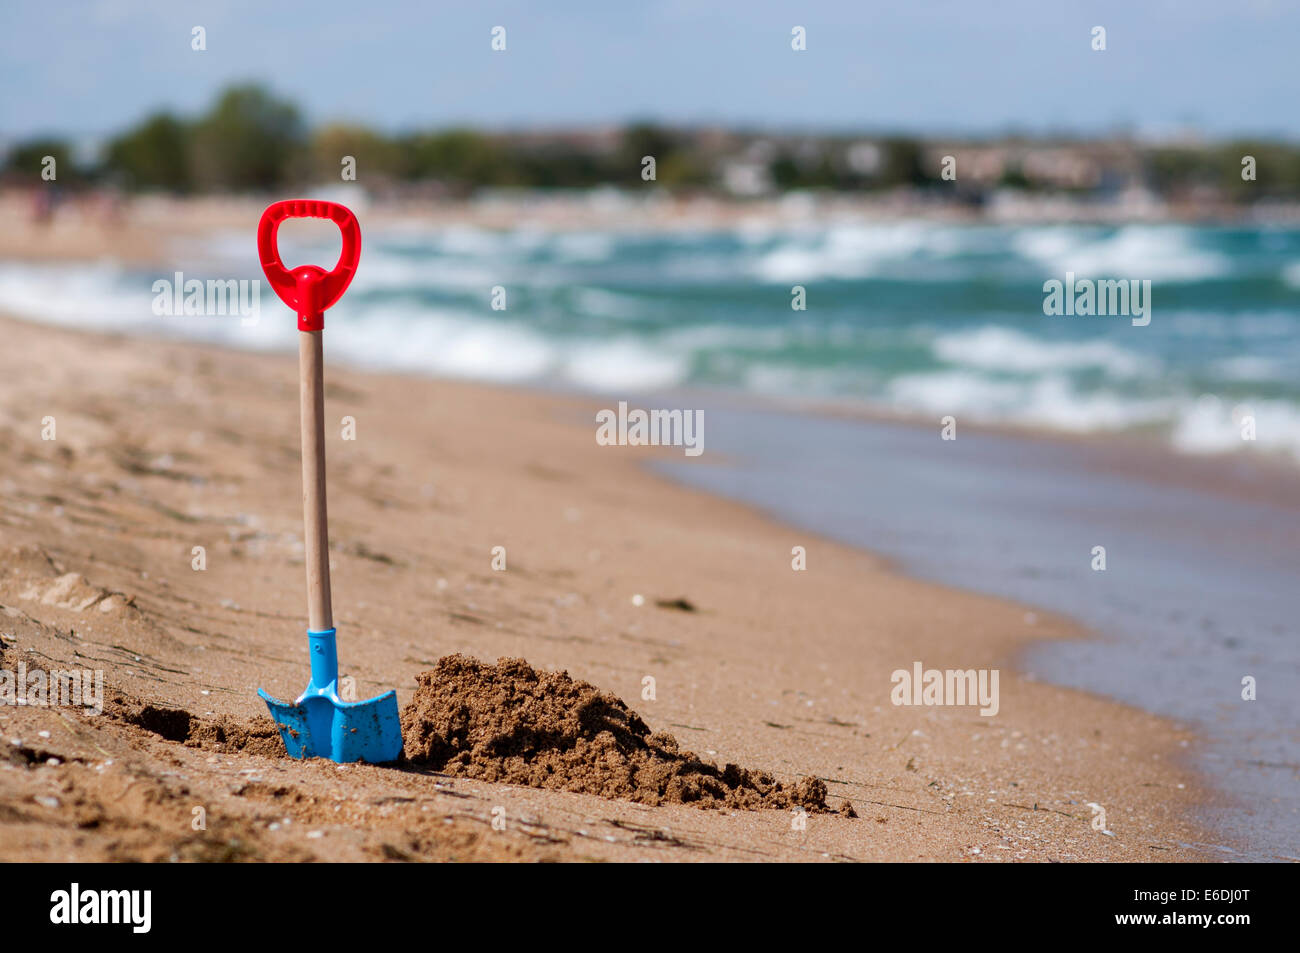 Spielzeug Schaufel am Strand-Loch in den sand Stockfoto